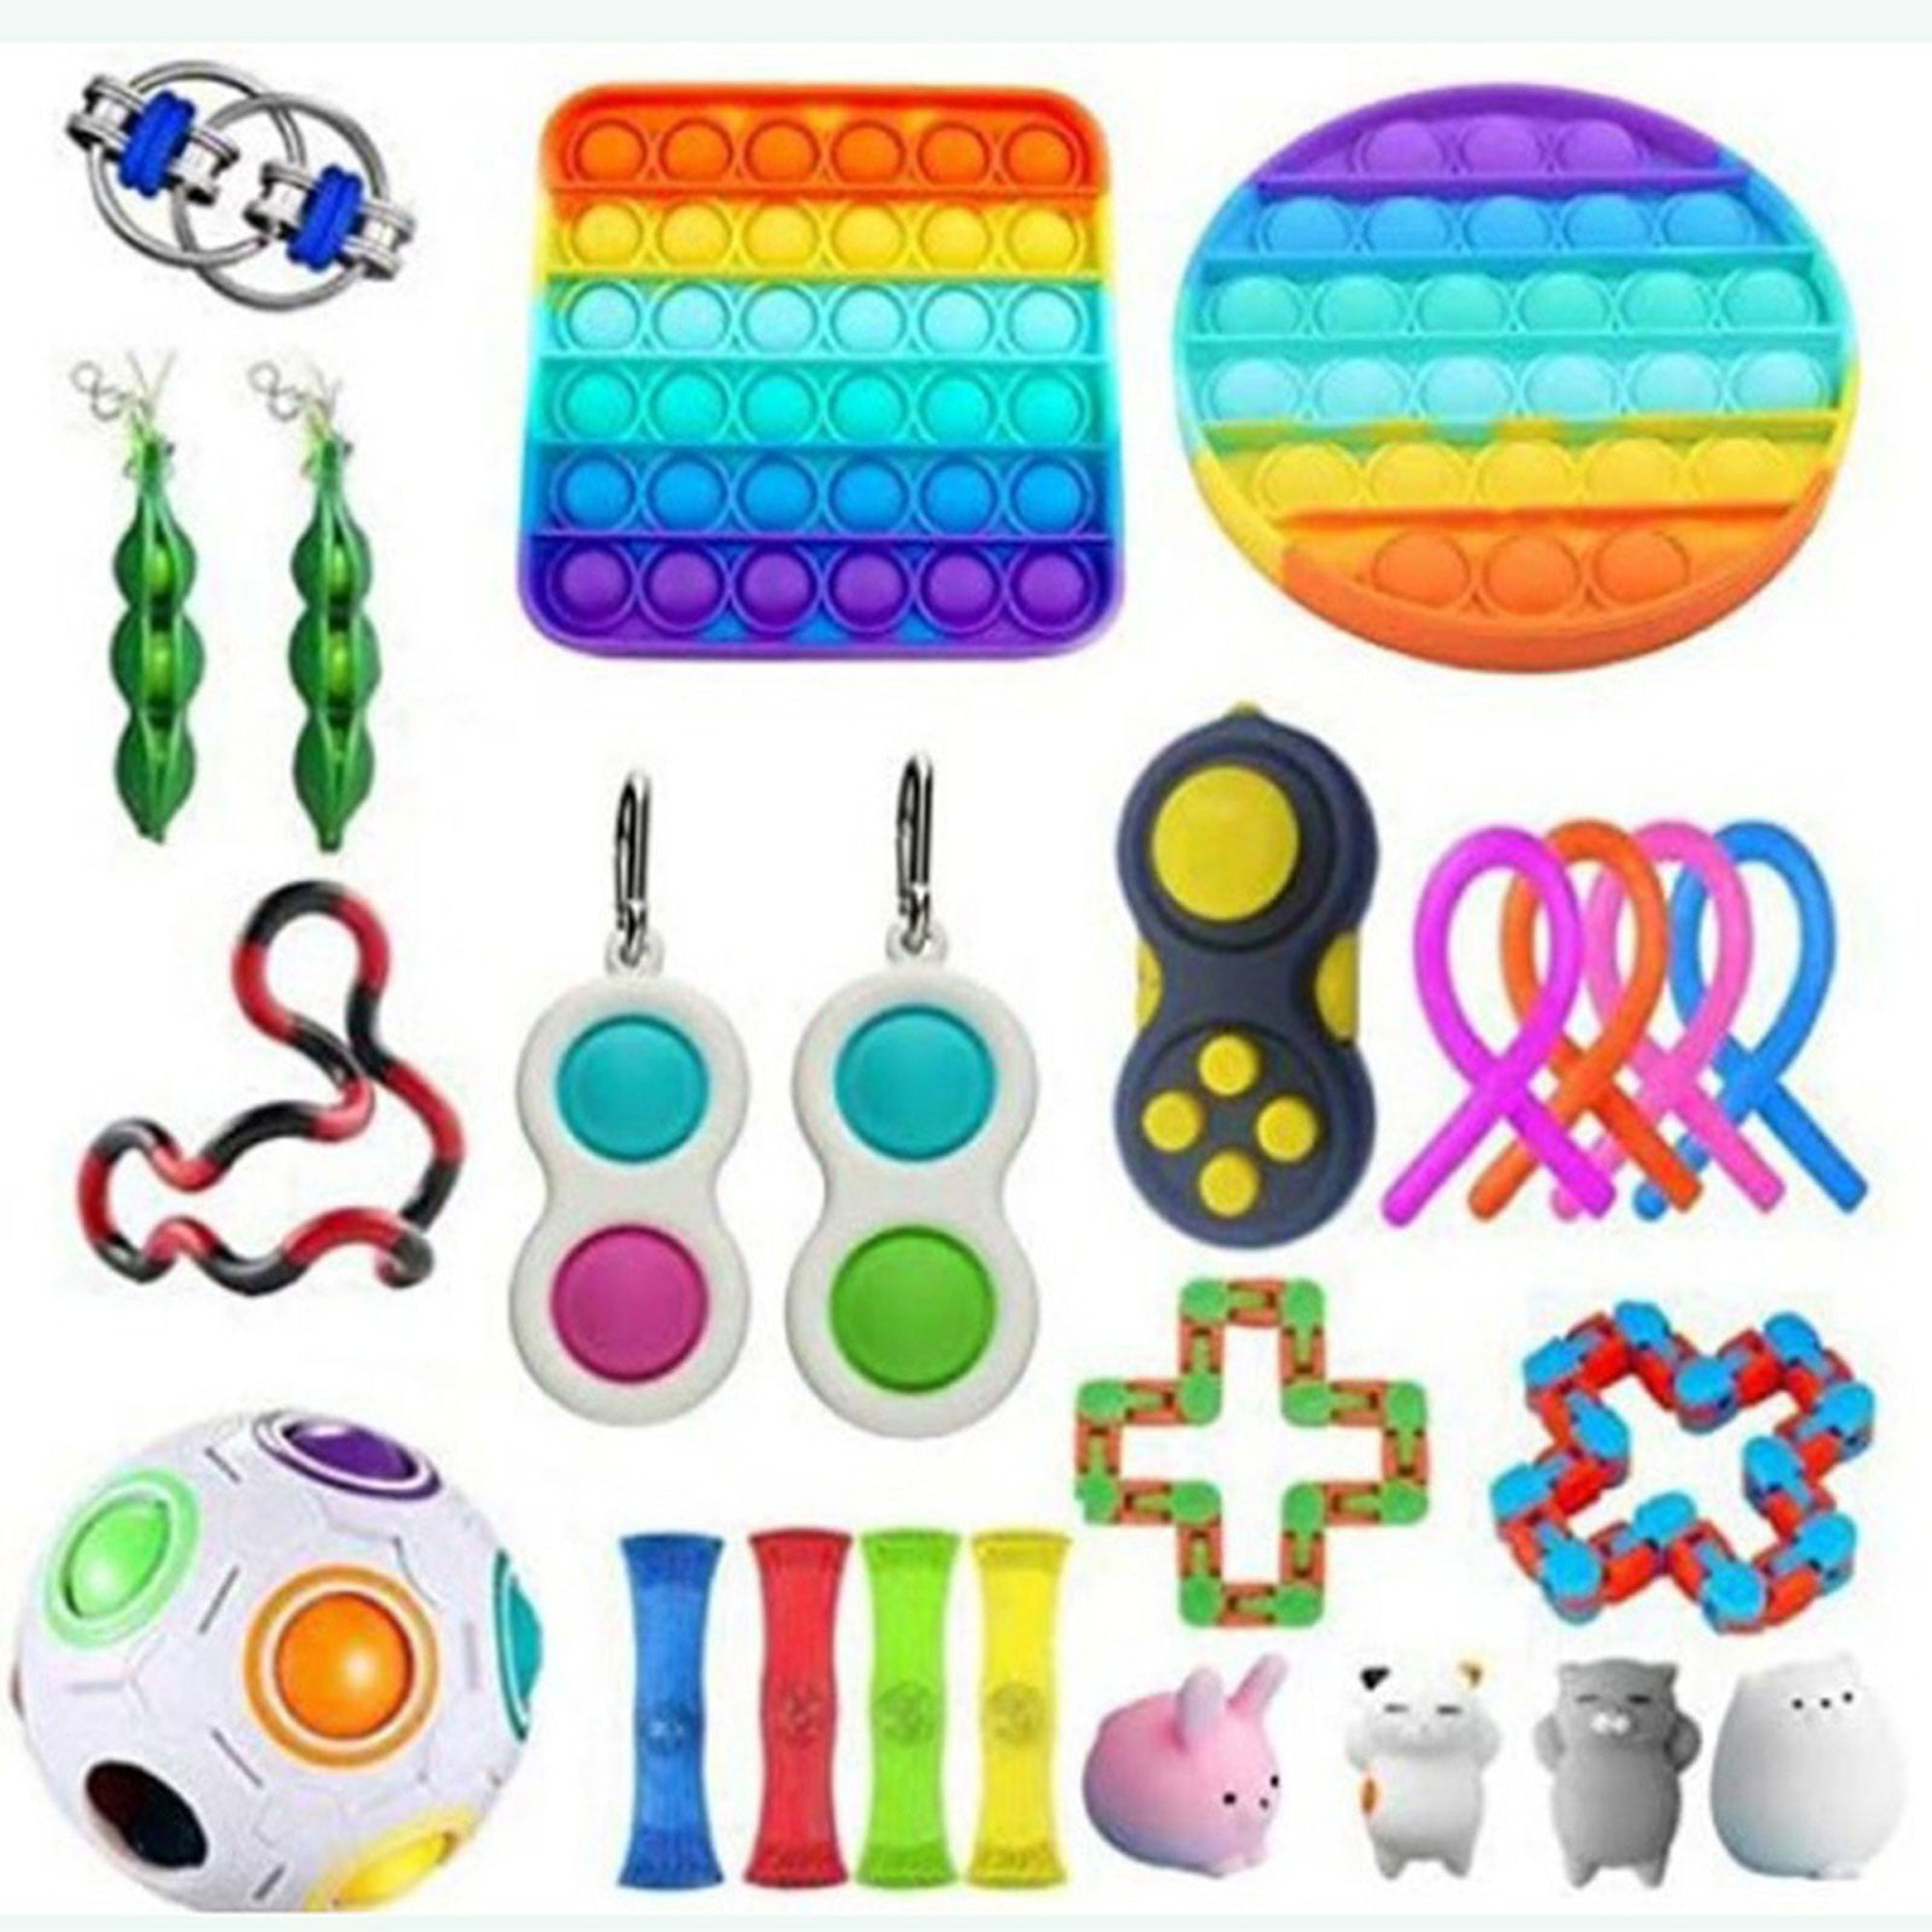 Details about   20pcs Fidget Toys Set Kit Sensory Tools BundleStress Relief Hand Kids Adults Toy 